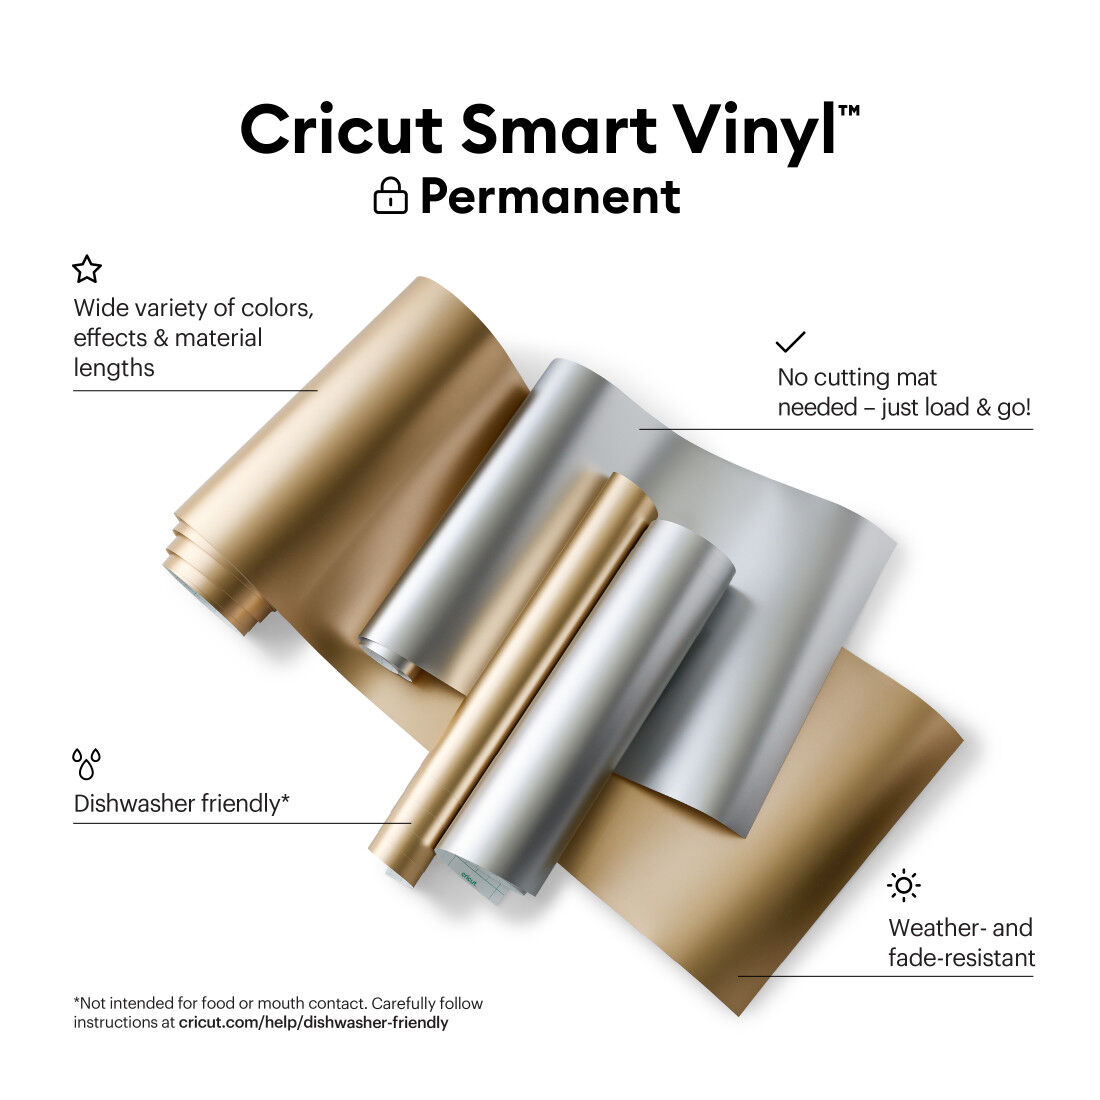  Cricut Joy Smart Vinyl Permanent Silver : Arts, Crafts